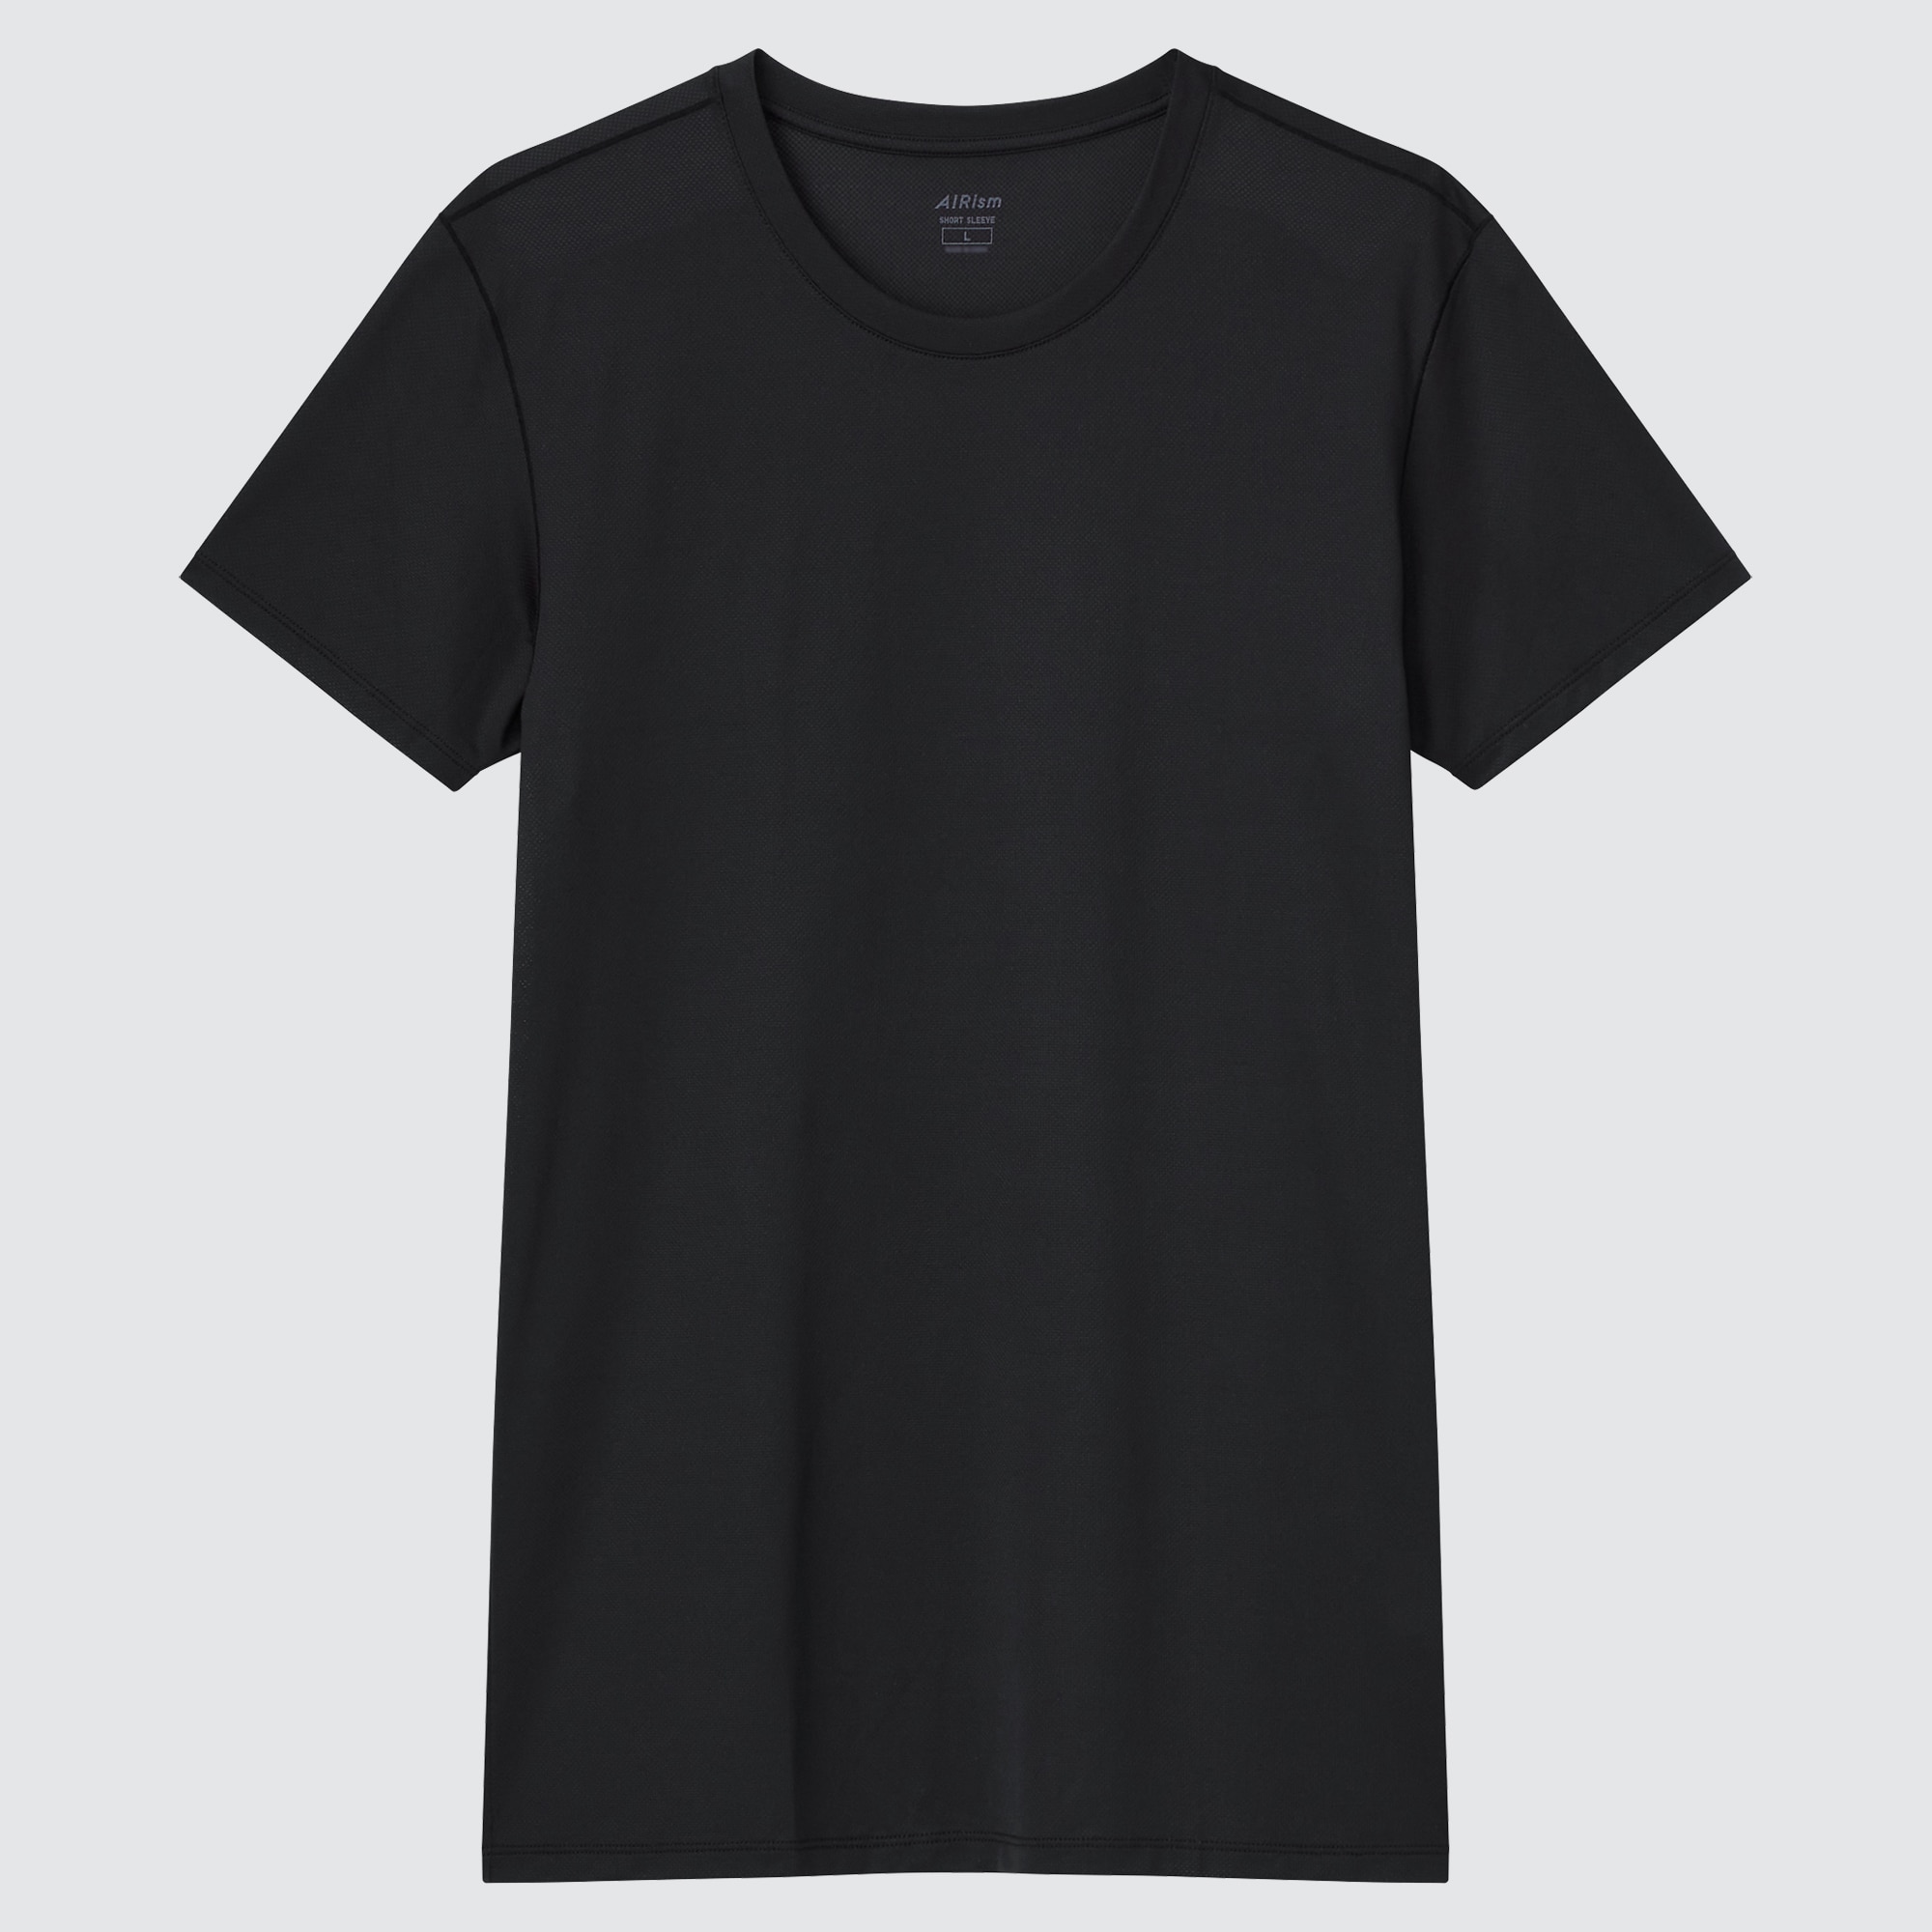 ユニクロ エアリズム メッシュクルーネック Tシャツ ブラック Sサイズ